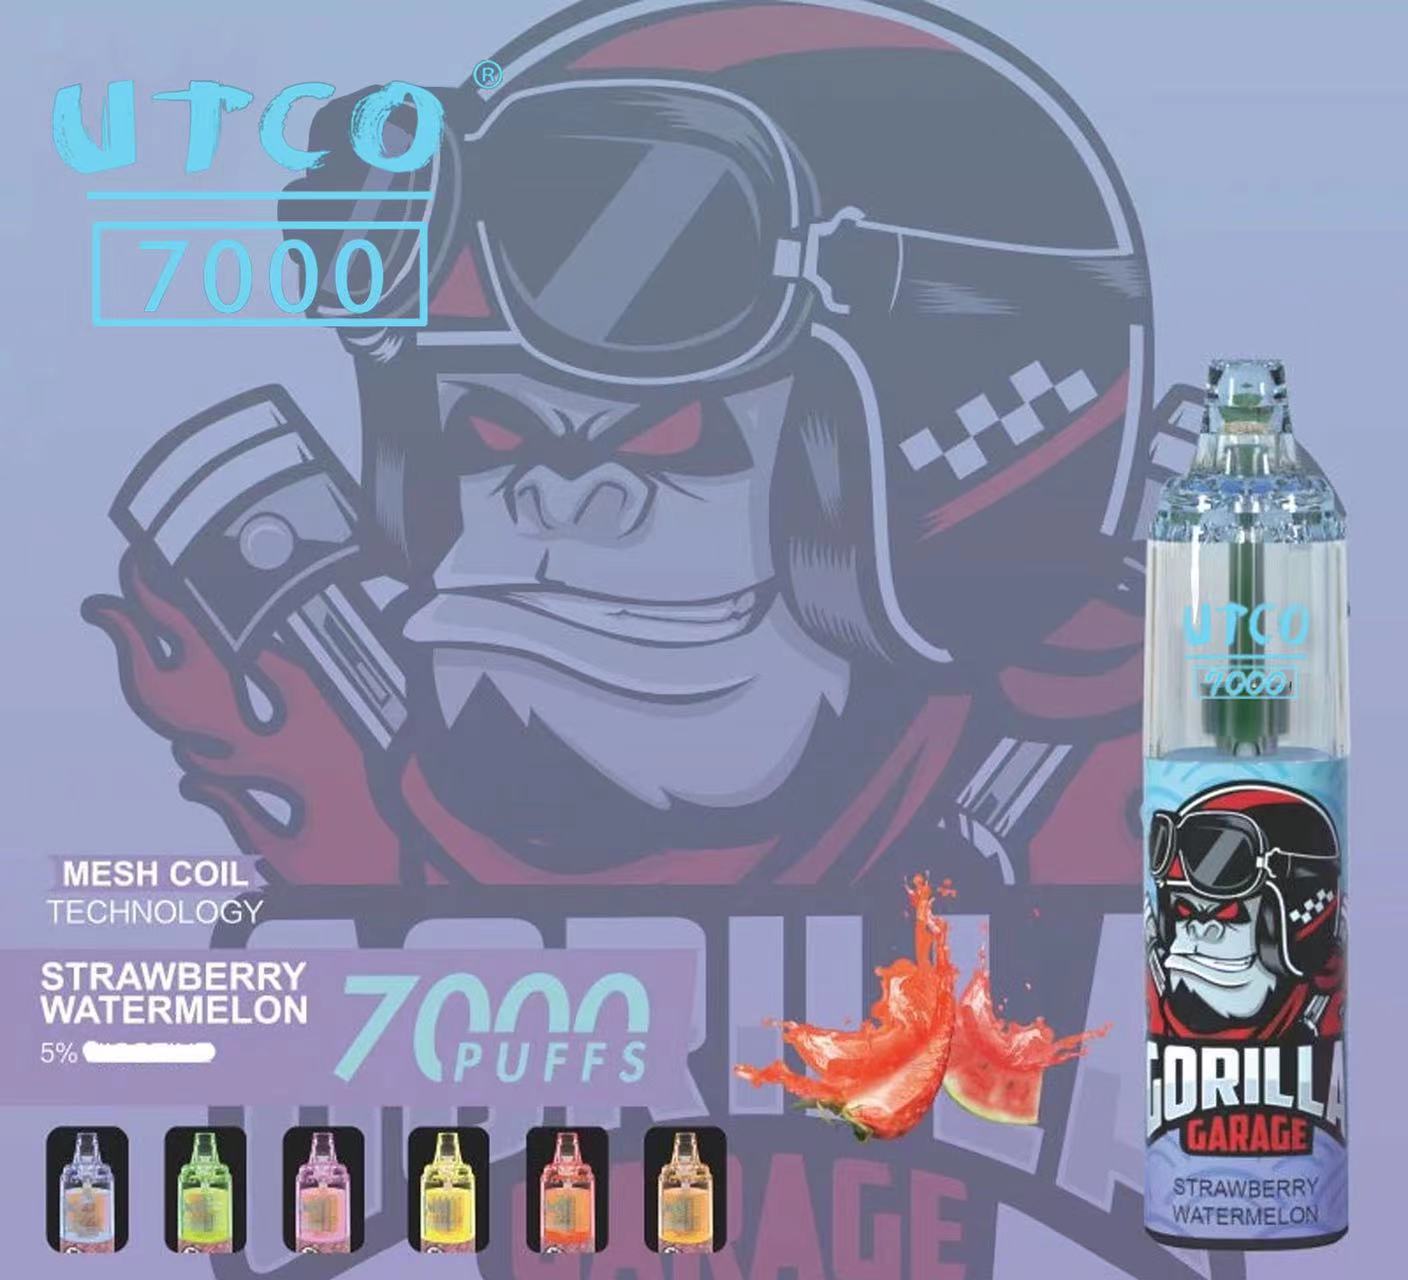 UTCO Gorilla 7000 tiri (puff) sigarette elettroniche usa e getta Kit ricaricabile 20mg